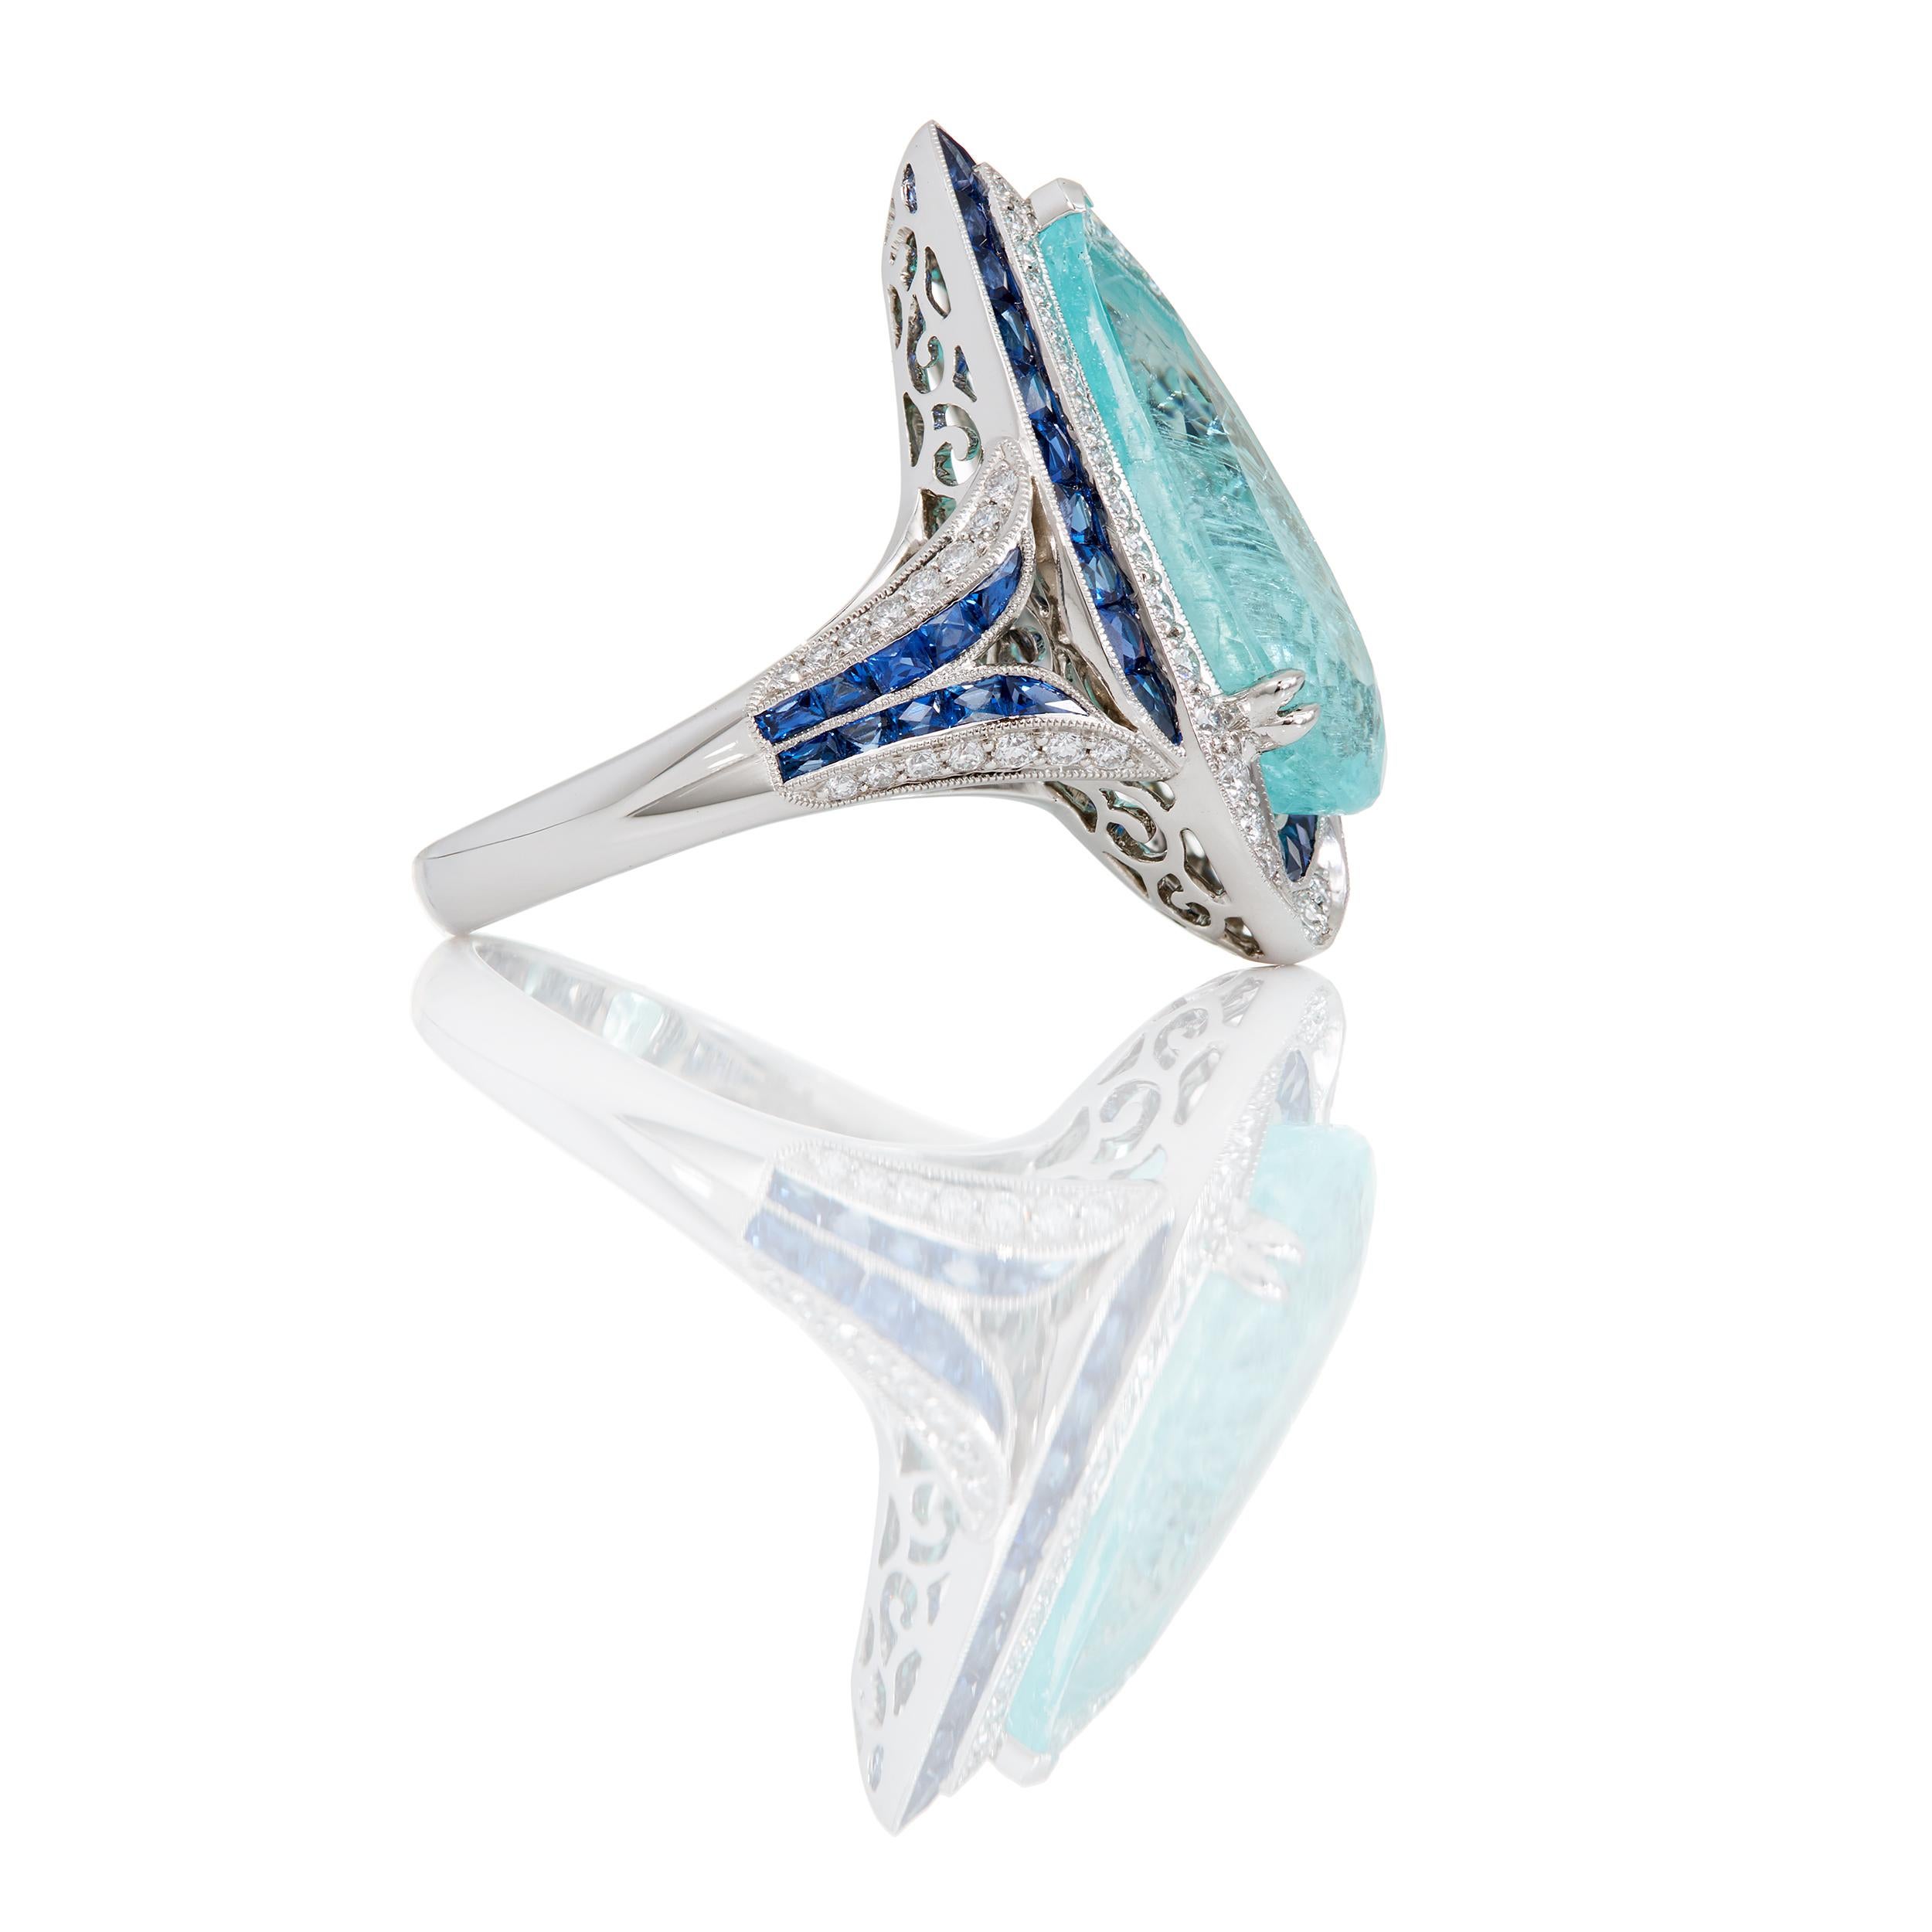 Des saphirs bleus de Ceylan et des diamants entourent gracieusement cette spectaculaire tourmaline Paraiba de 5,39 carats, de forme allongée et en poire.  Cette bague unique en son genre a été conçue et fabriquée à la main avec un ensemble de